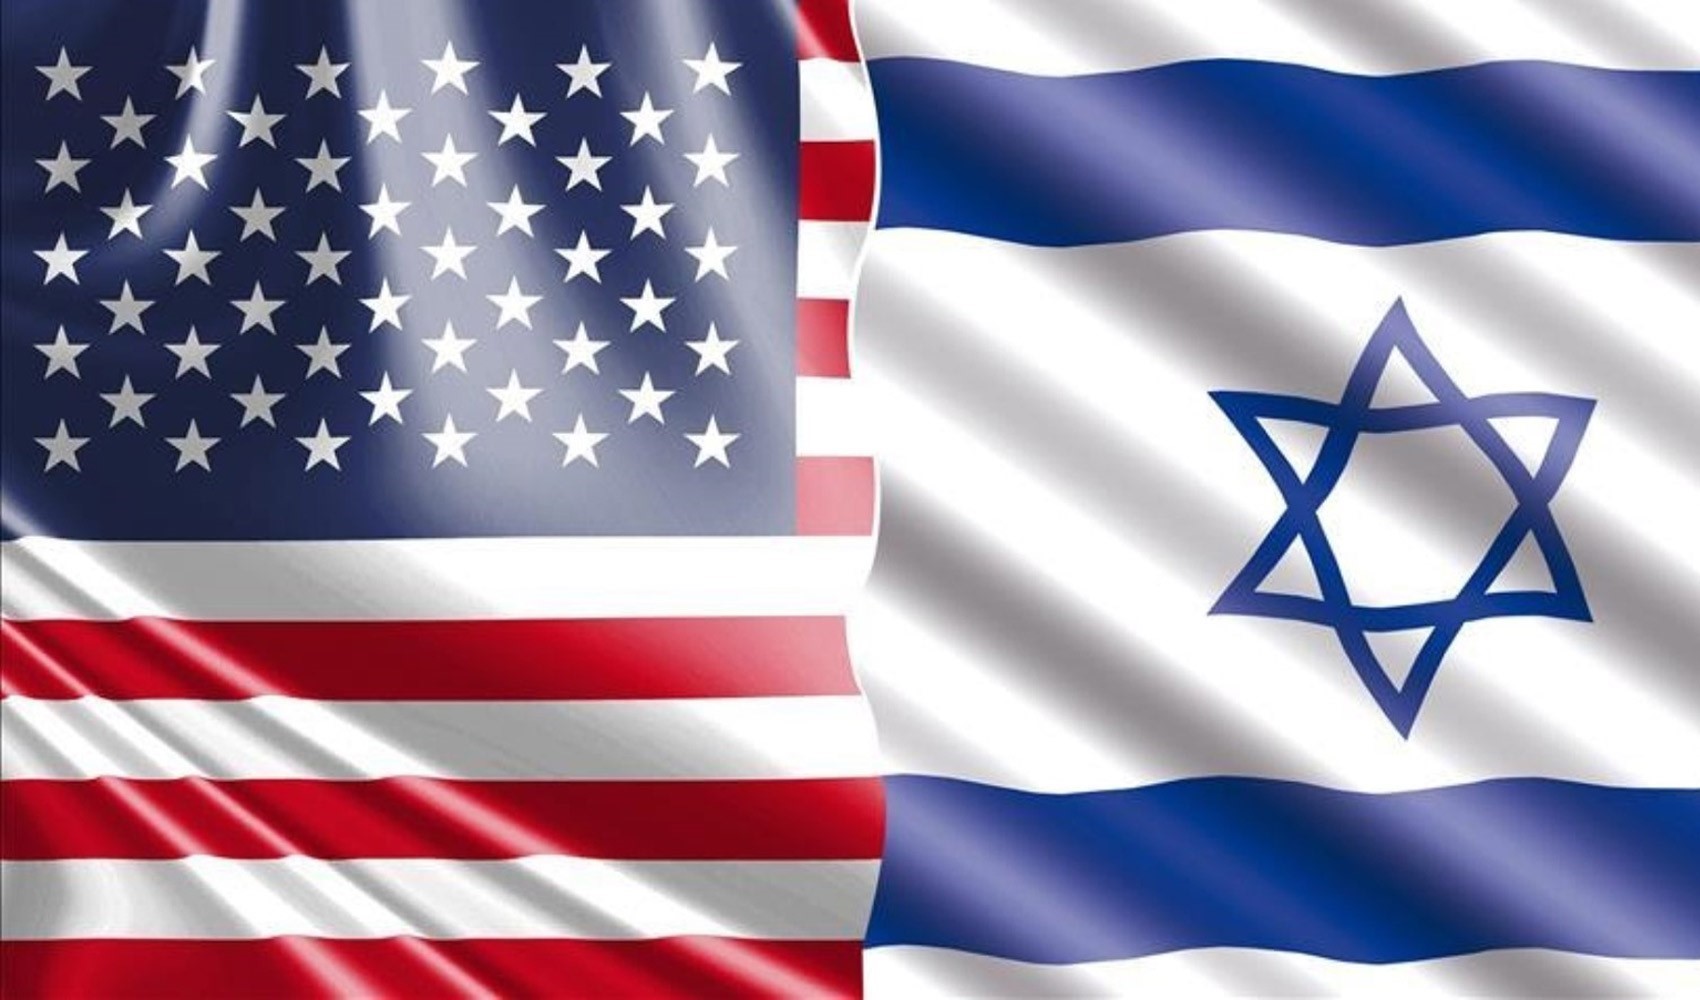 ABD, İsrail'e 18 milyar dolarlık yeni silah satışına hazırlanıyor